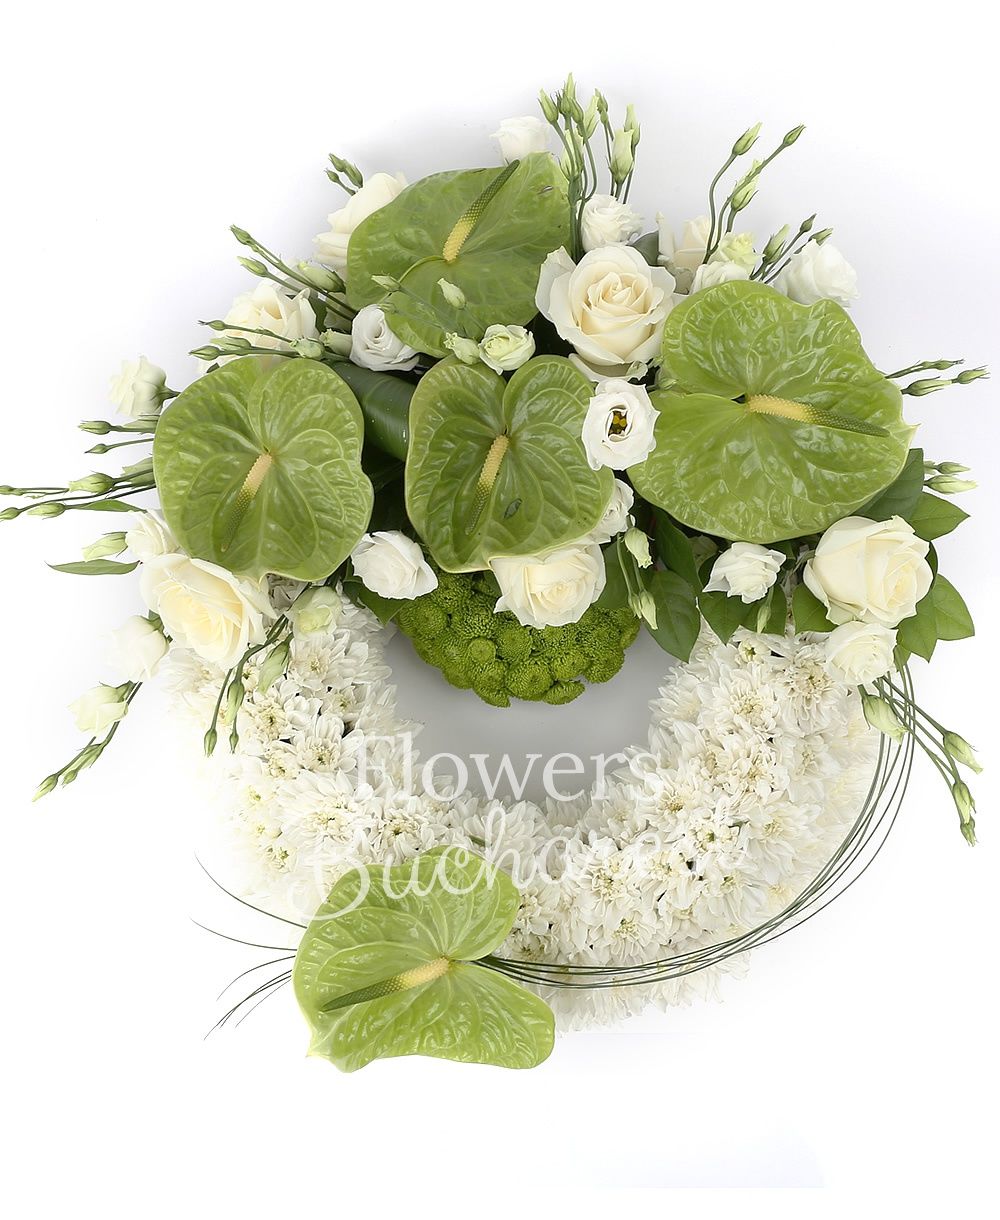 30 white chrysanthemums, 10 green santini, 5 white roses, 7 white roses, 5 green anthurium, 6 white lisianthus, greenery